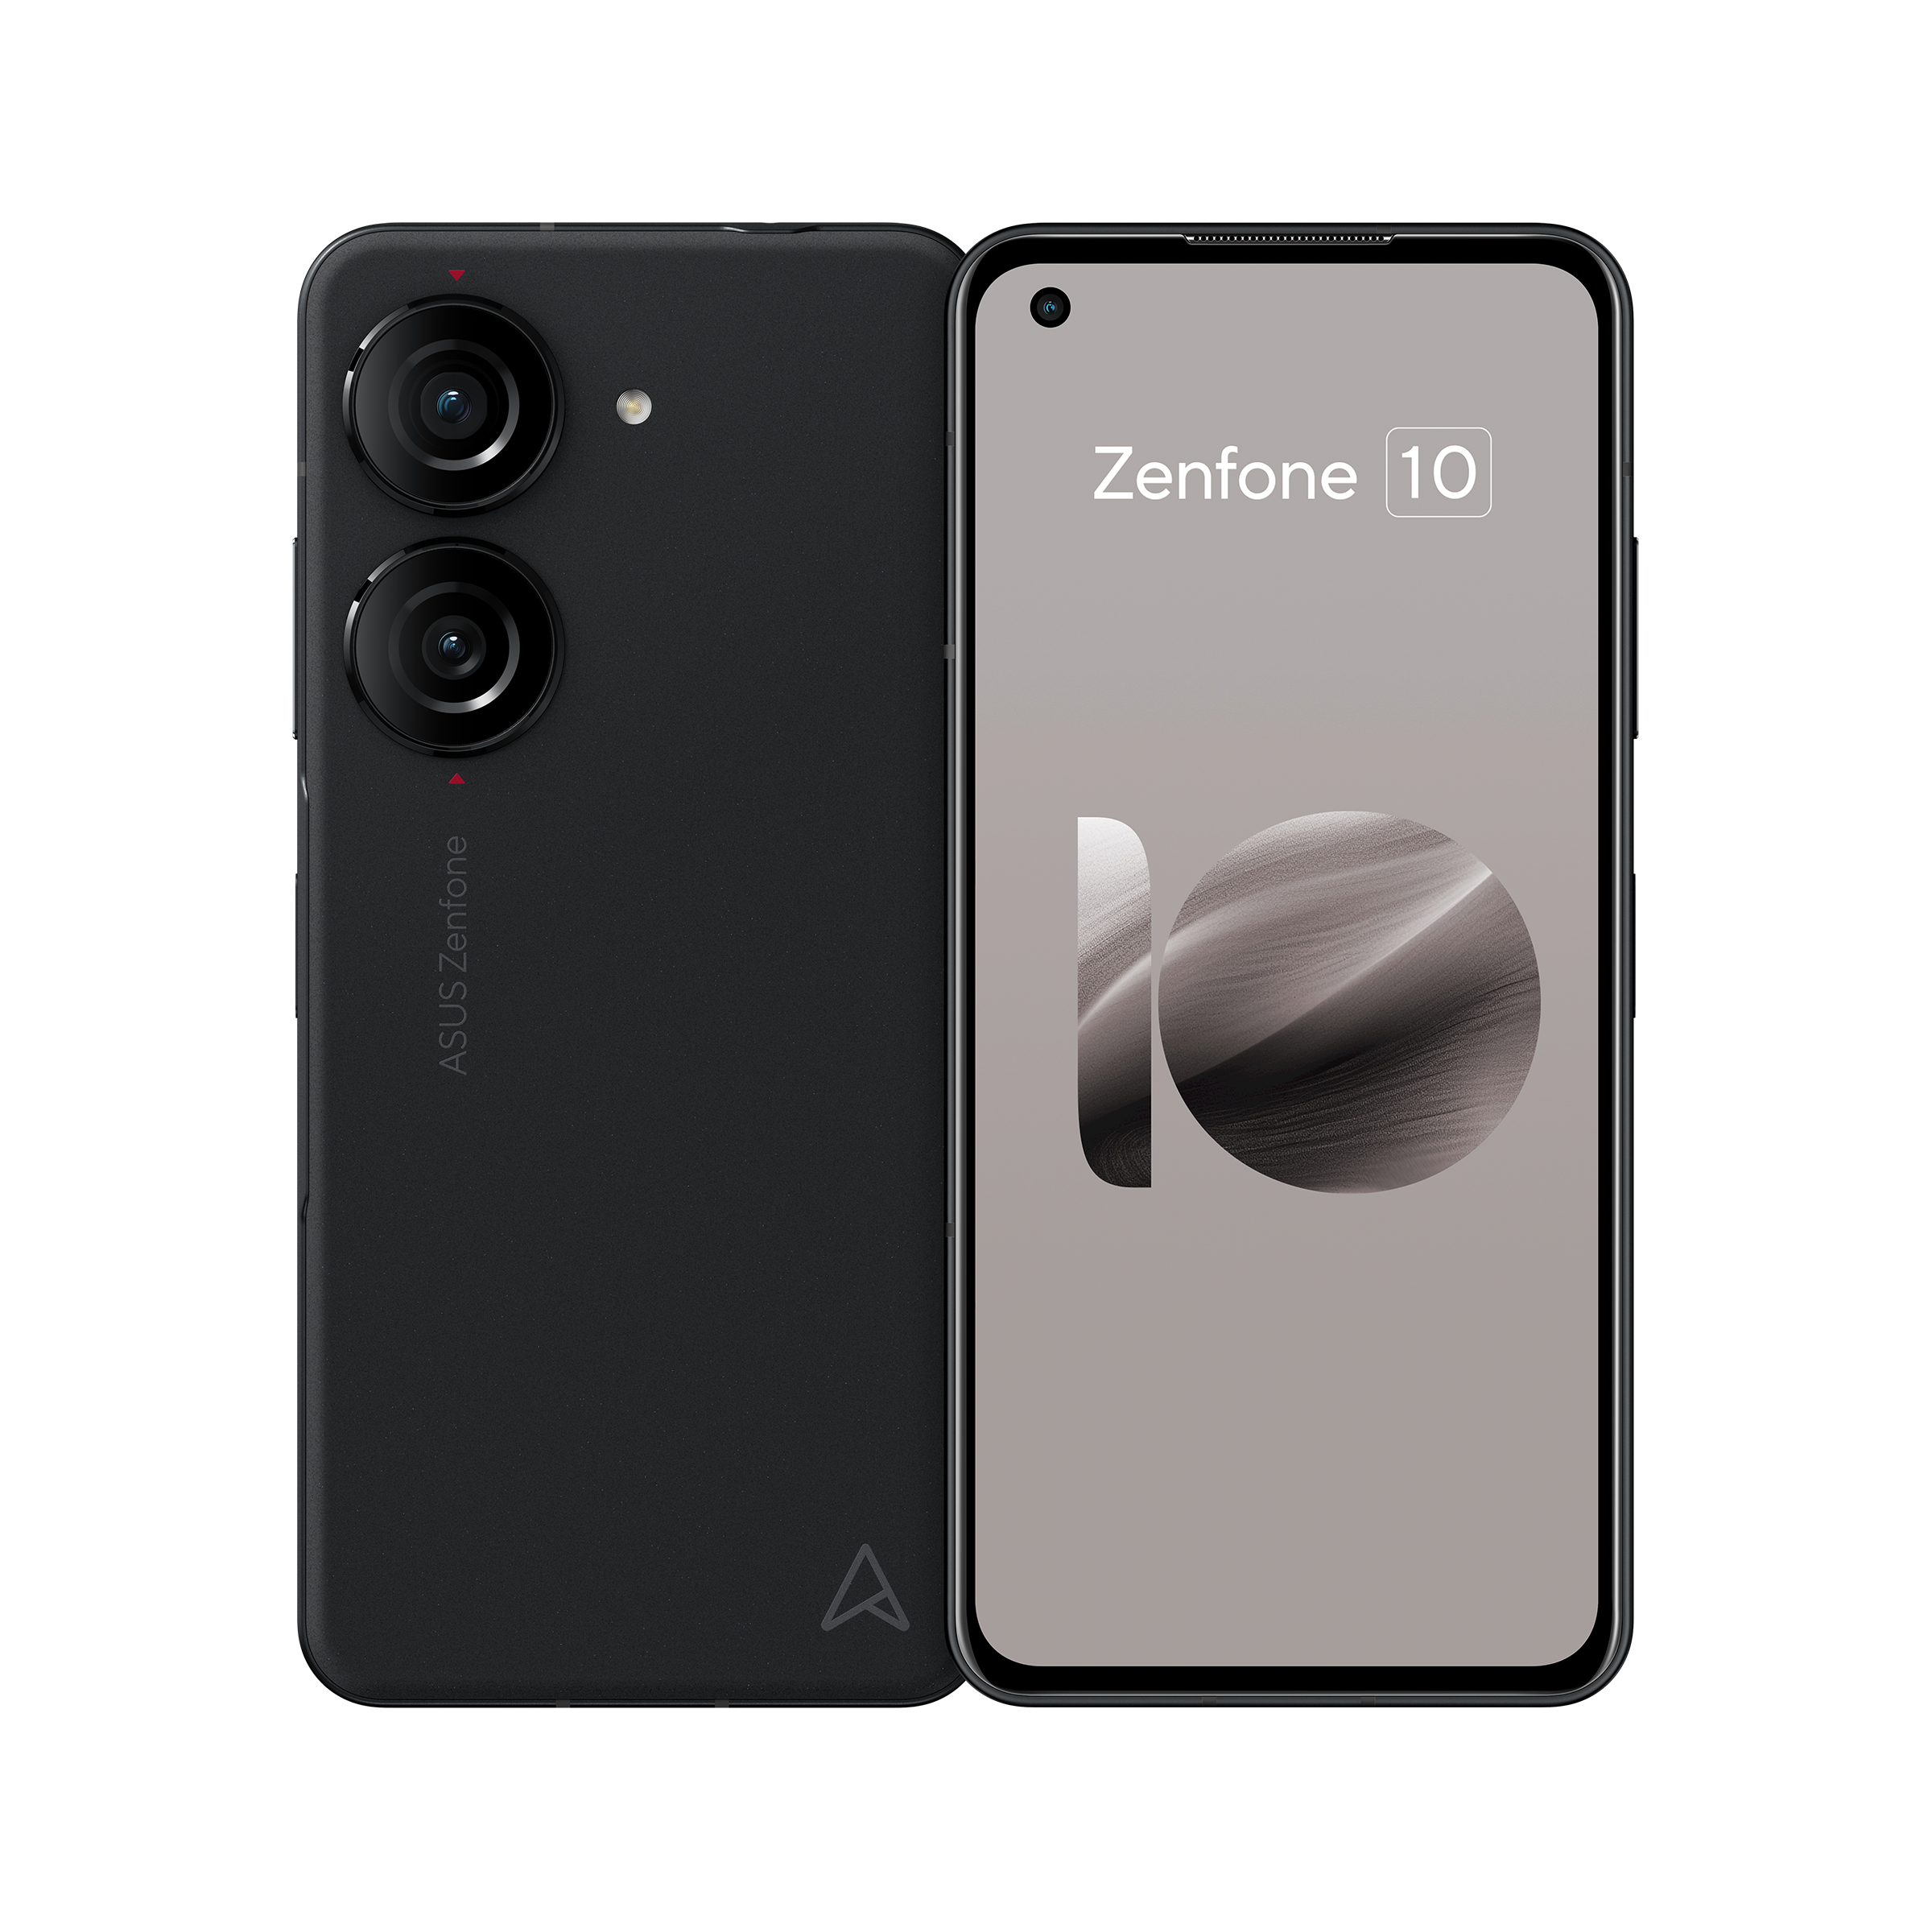 Asus Zenfone 10 - Apple Empire, asus zenfone 10 